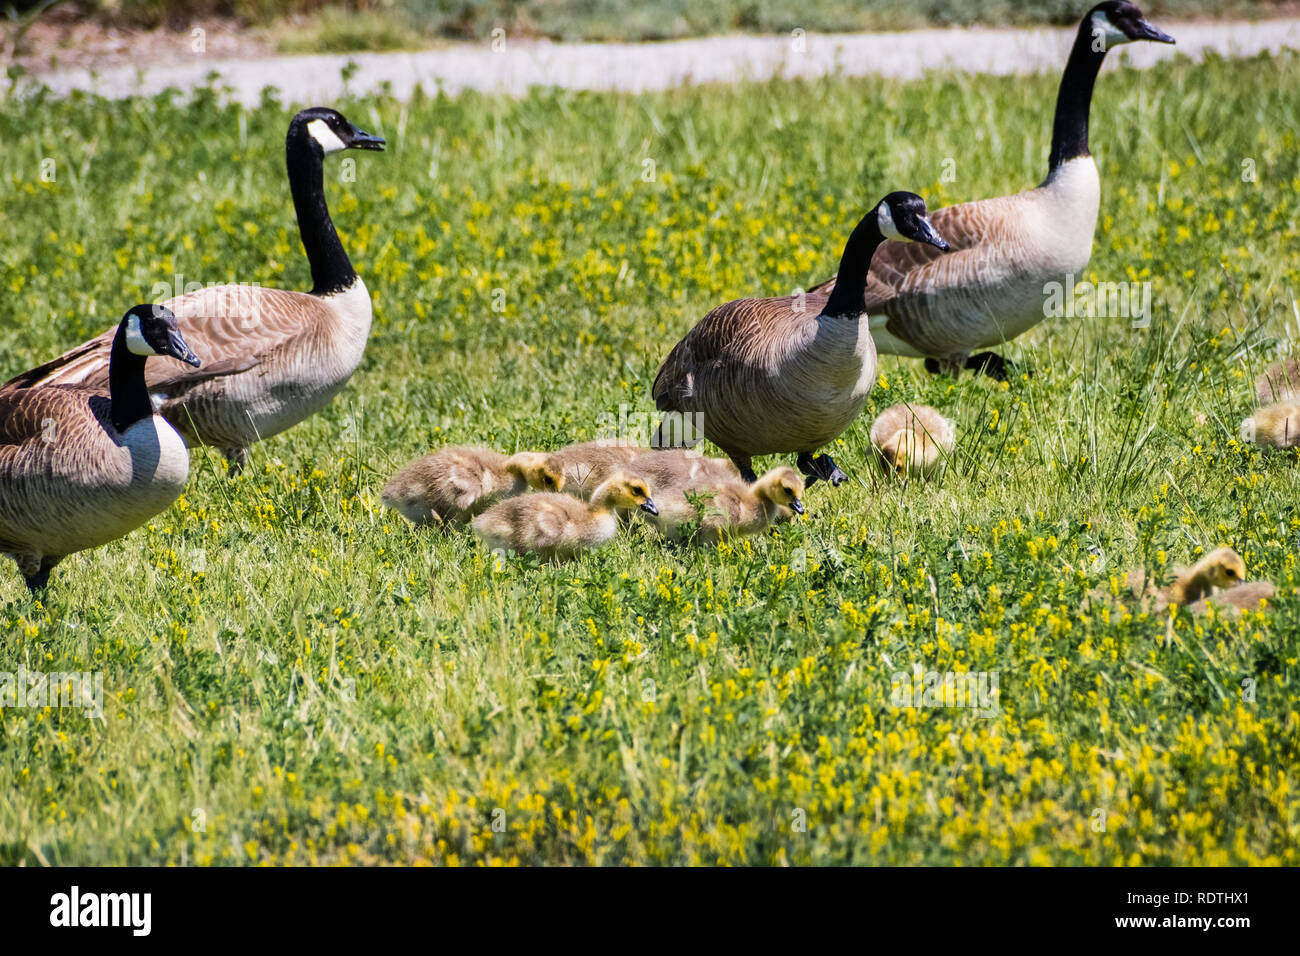 Bernache du Canada (Branta canadensis) nouvelle naissance poussins entouré d'oies adultes sur un pré vert, baie de San Francisco, Californie Banque D'Images